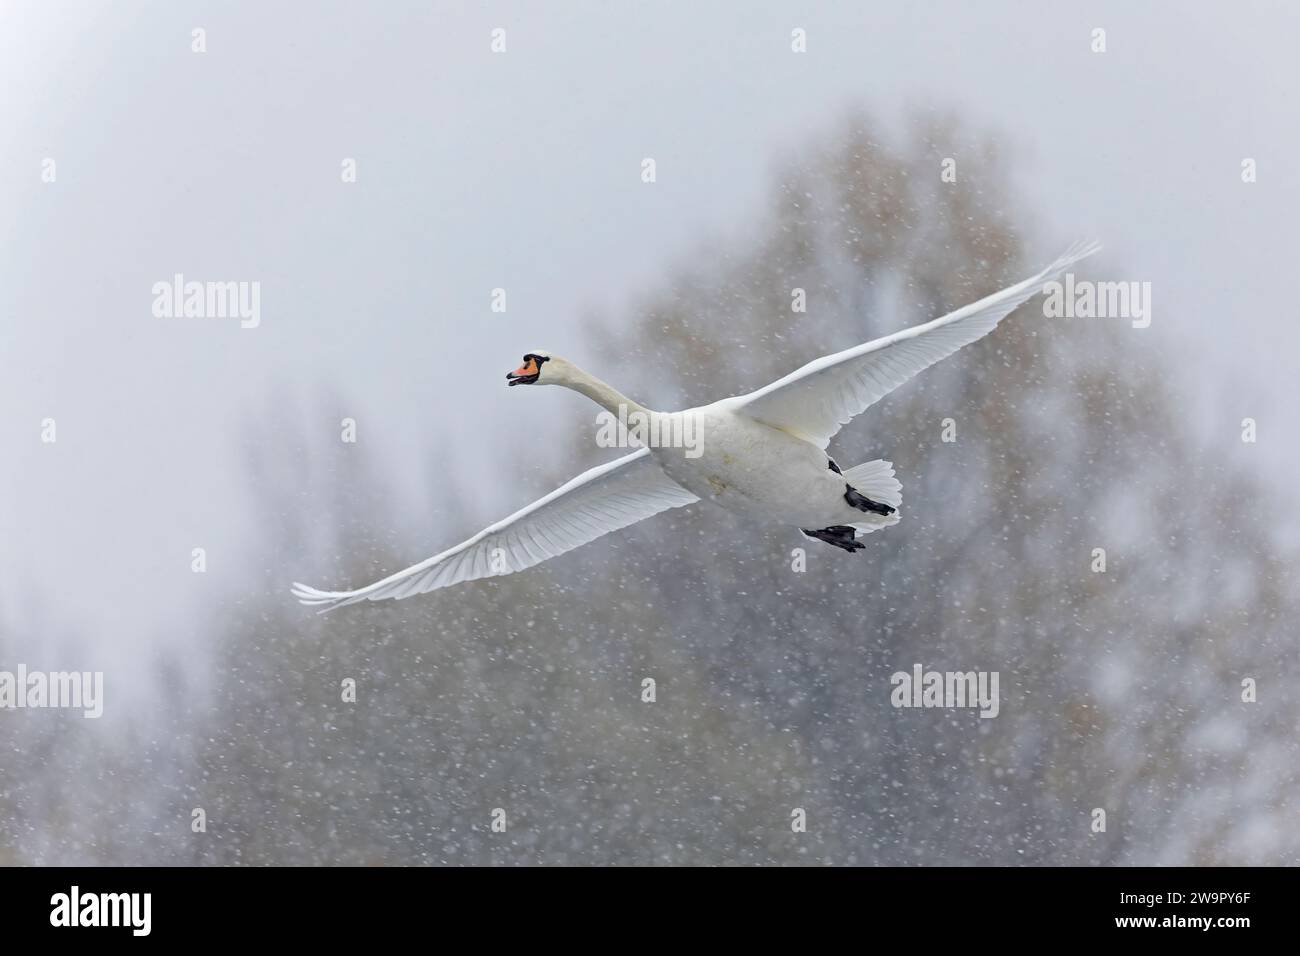 Mute swan (Cygnus olor) in flight in heavy snowfall. Stock Photo